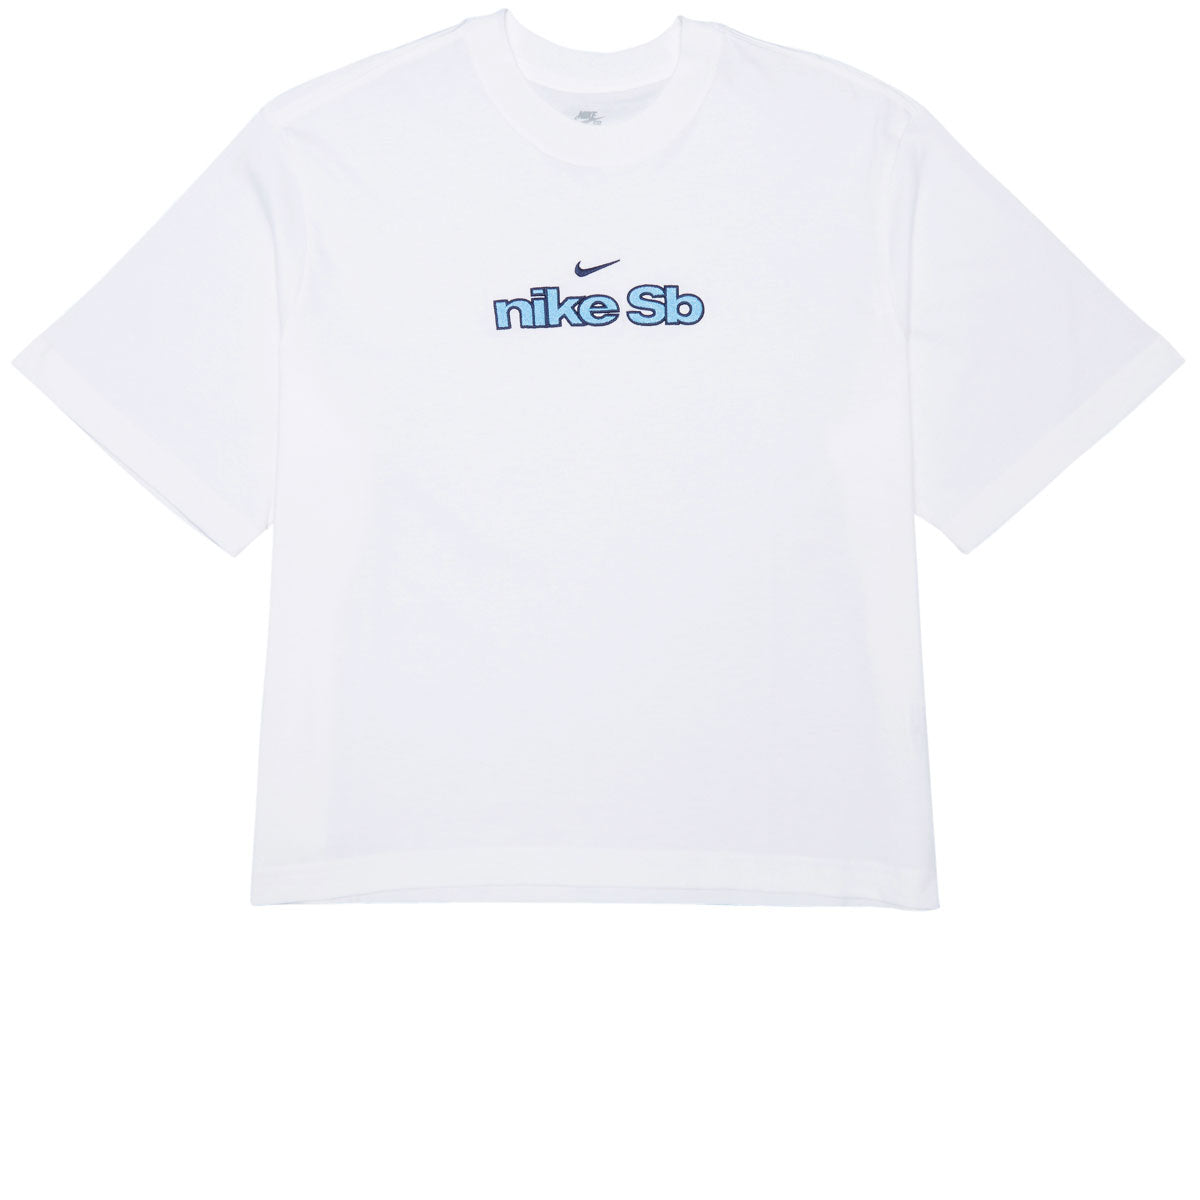 Nike SB Skate Outline T-Shirt - White image 1